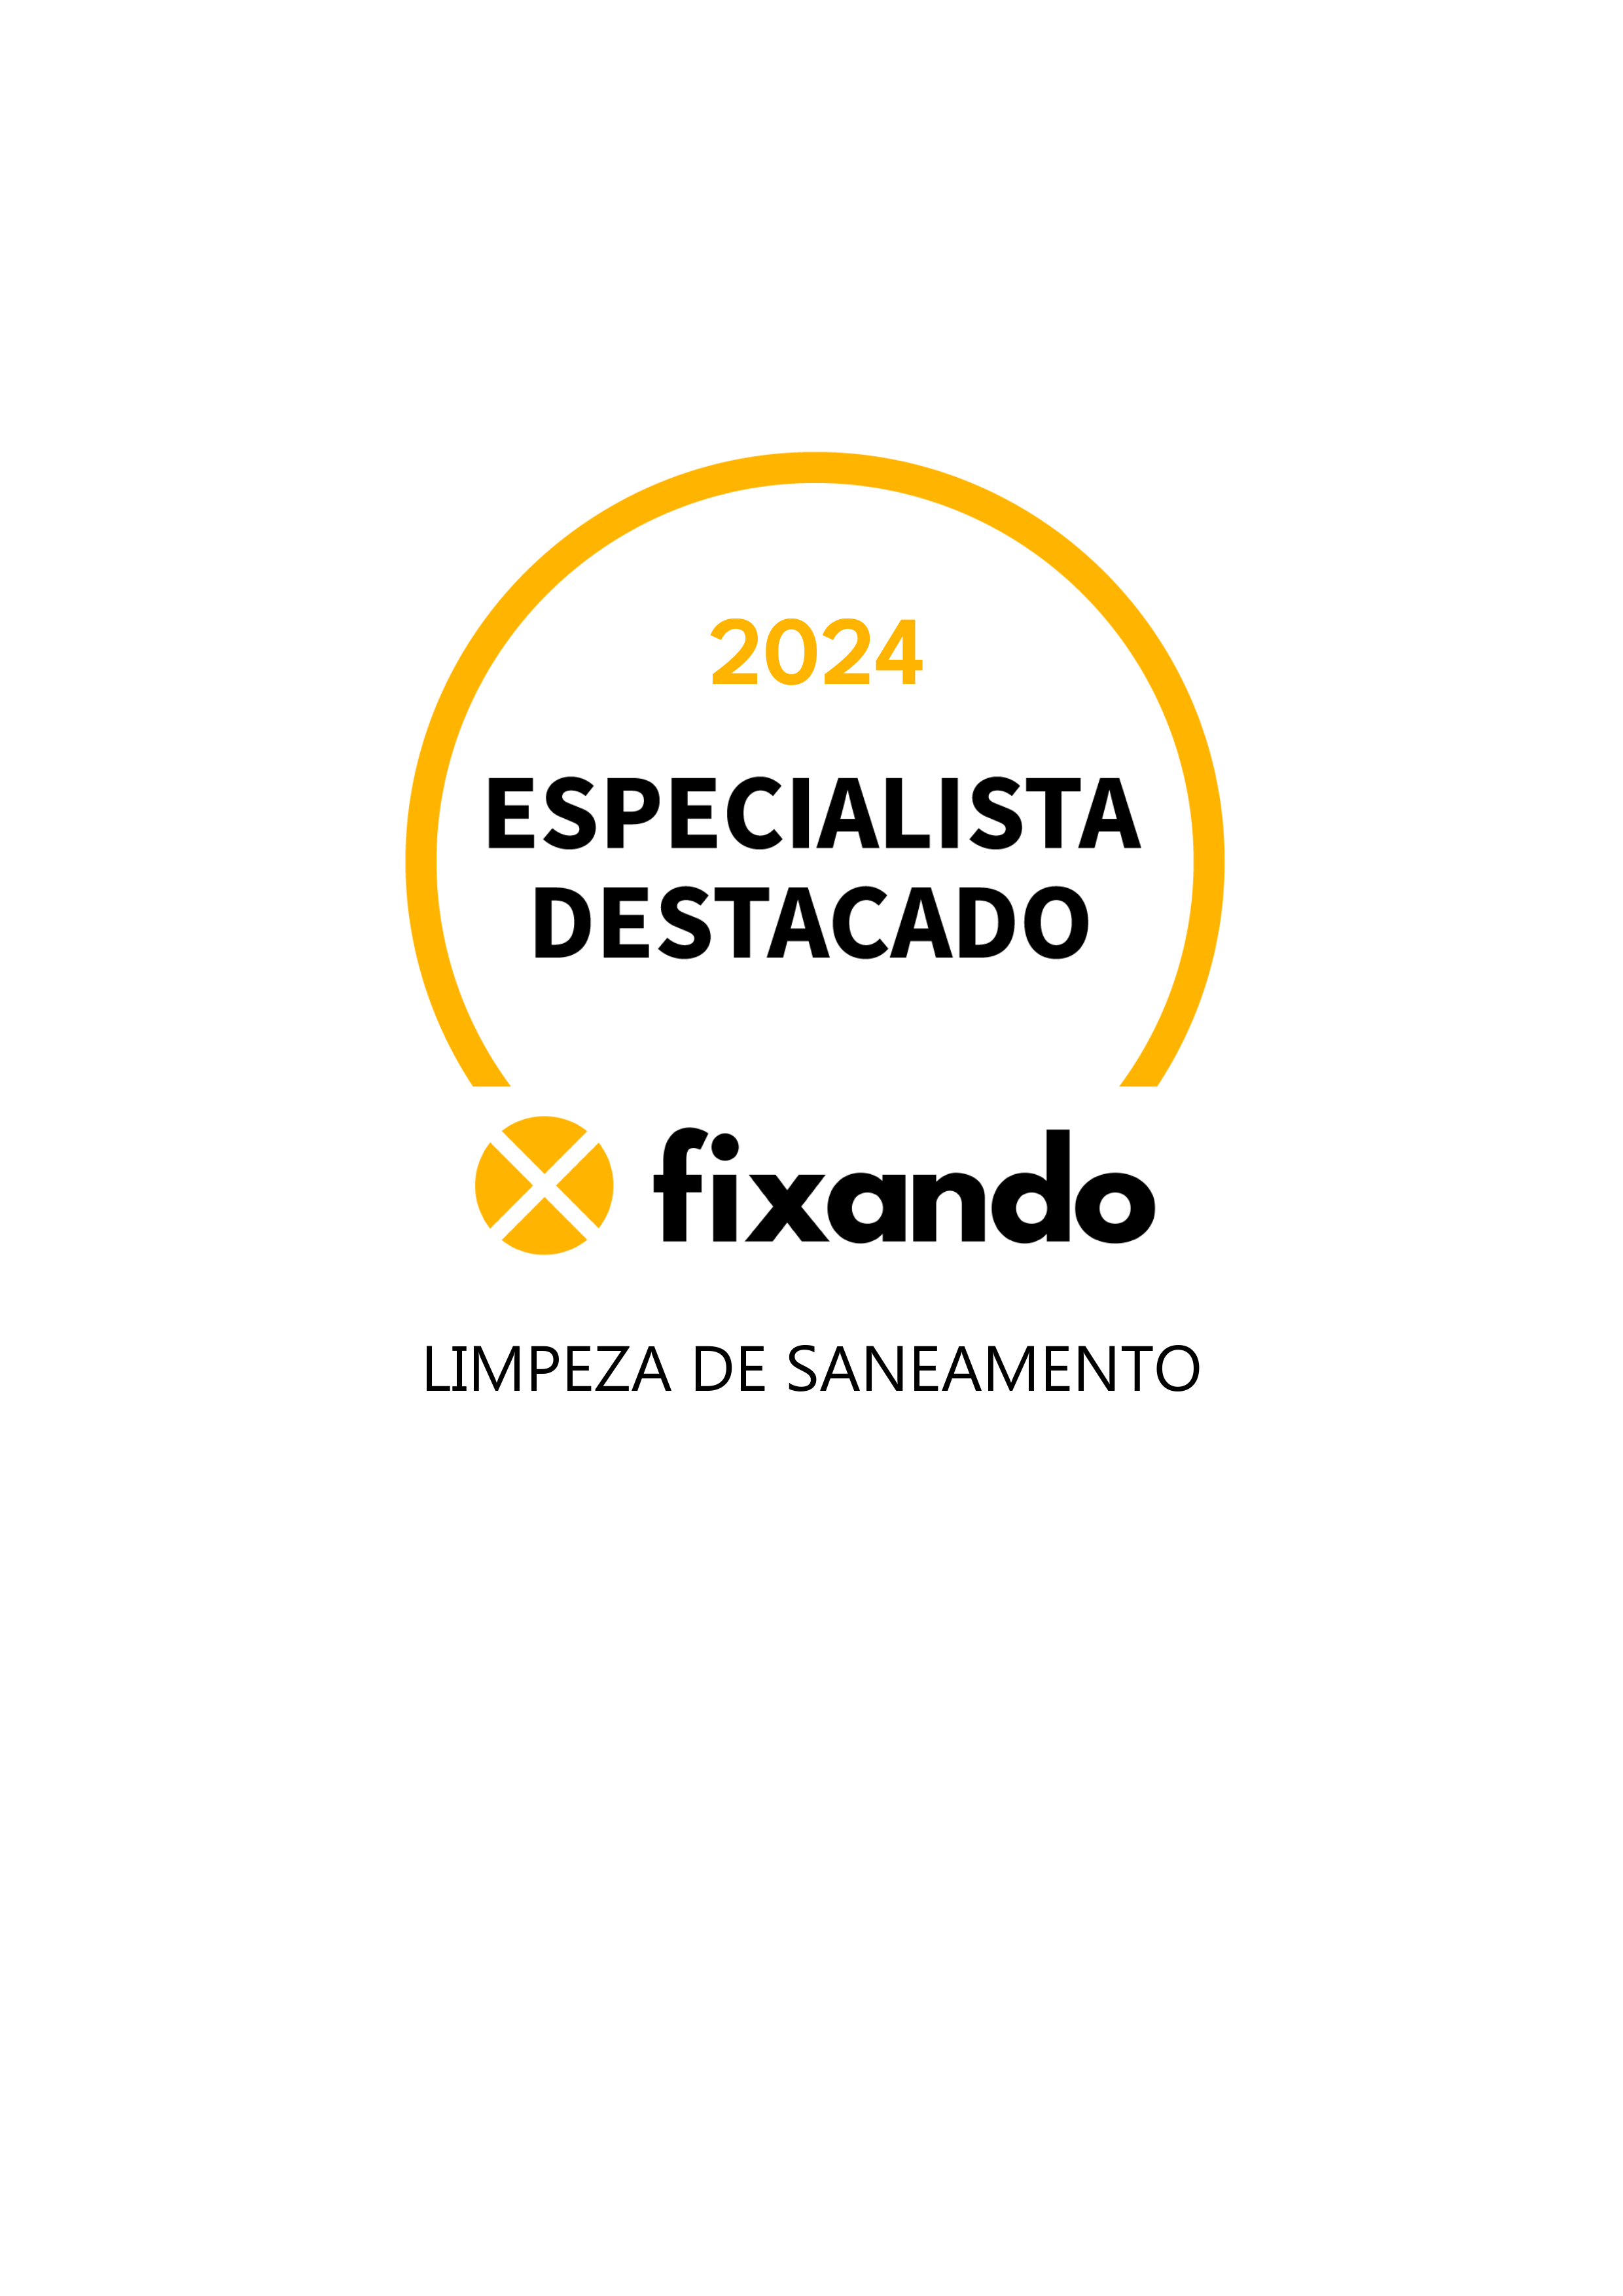 Limpeza de saneamento - Viana do Castelo - Reparação ou Manutenção de Canalização Exterior